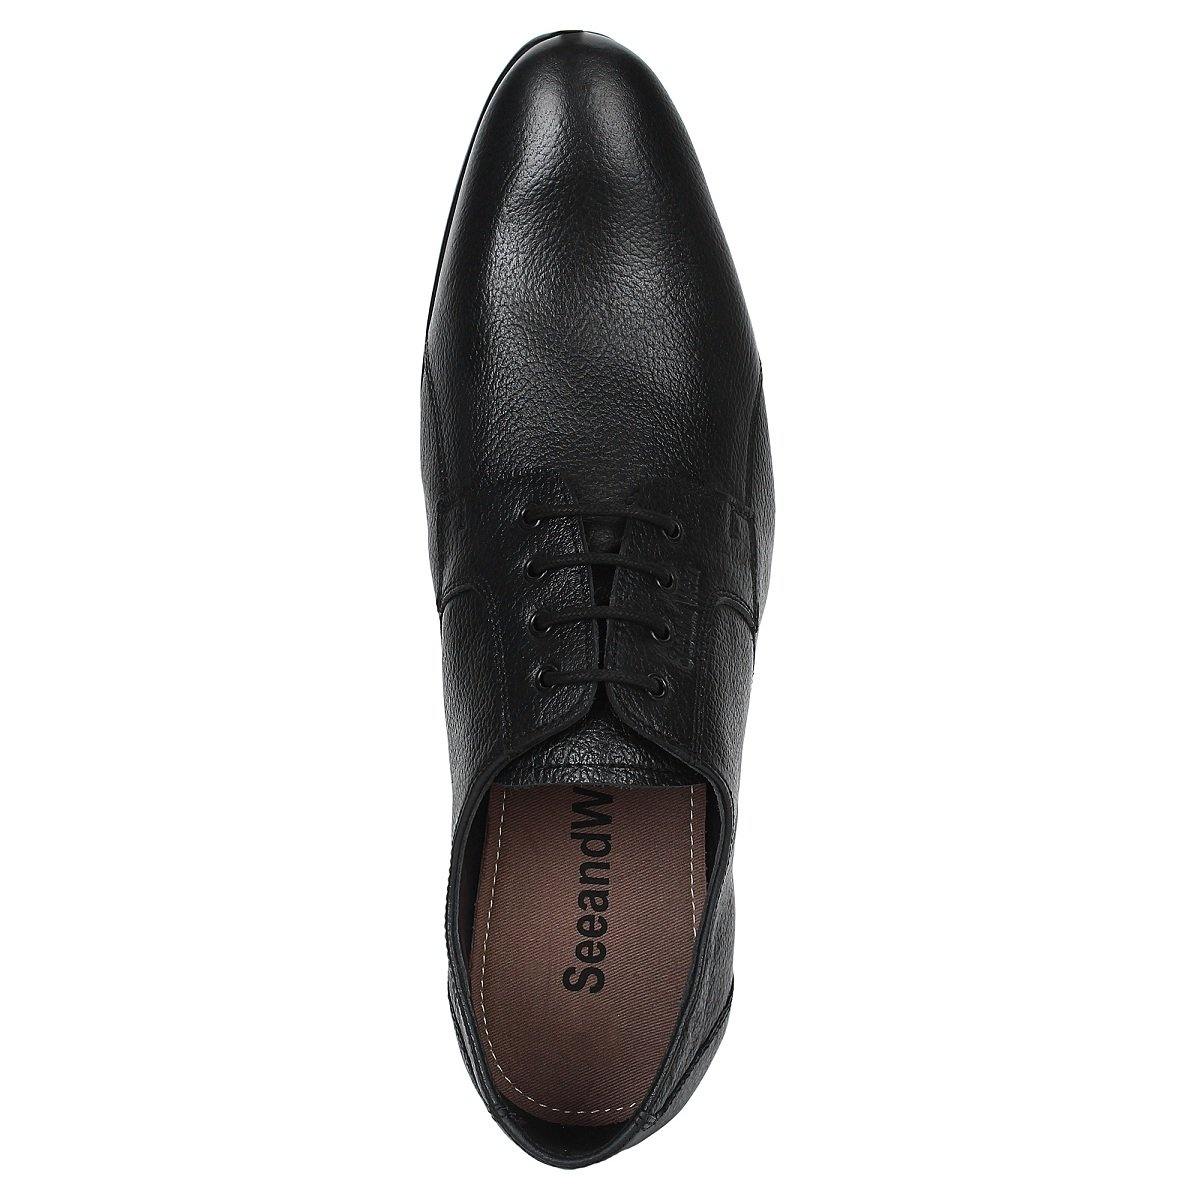 SeeandWear Pure Leather Formal Shoes for Men - SeeandWear